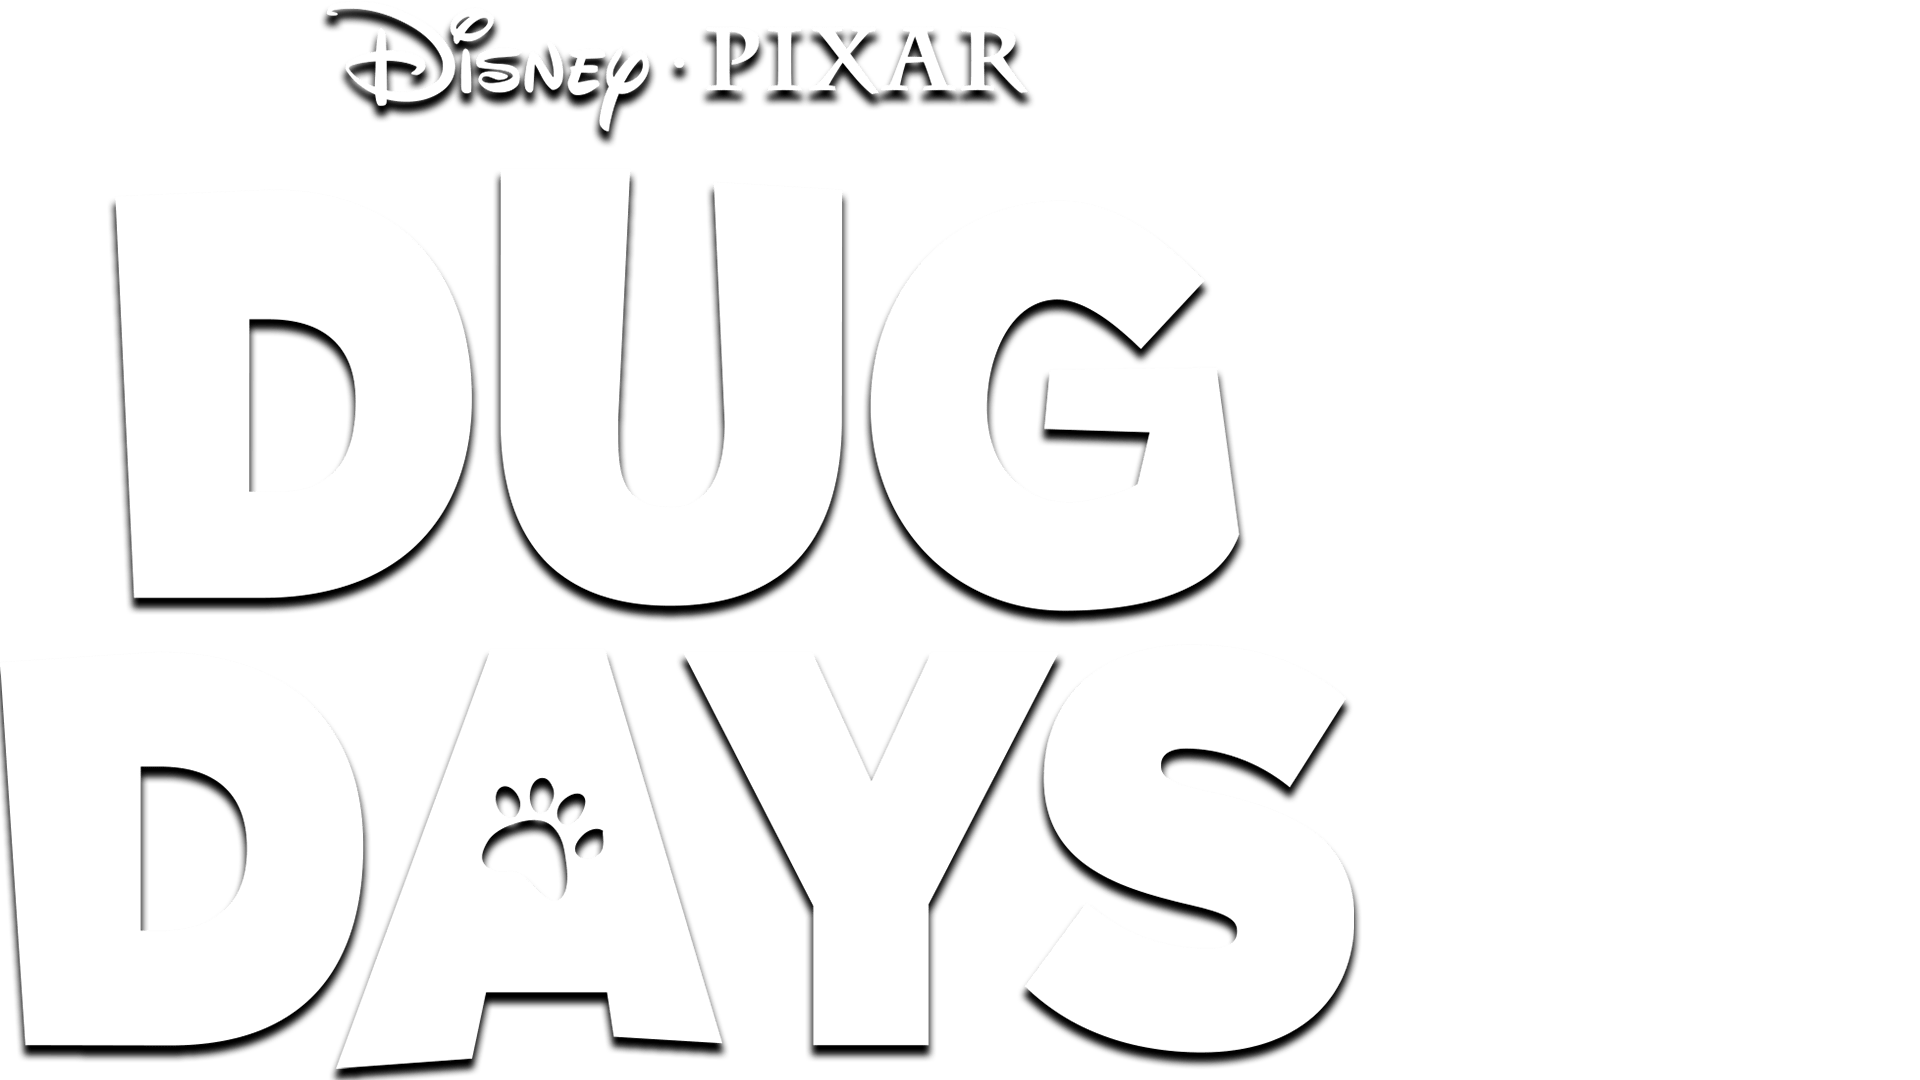 Dug Days  On Disney+